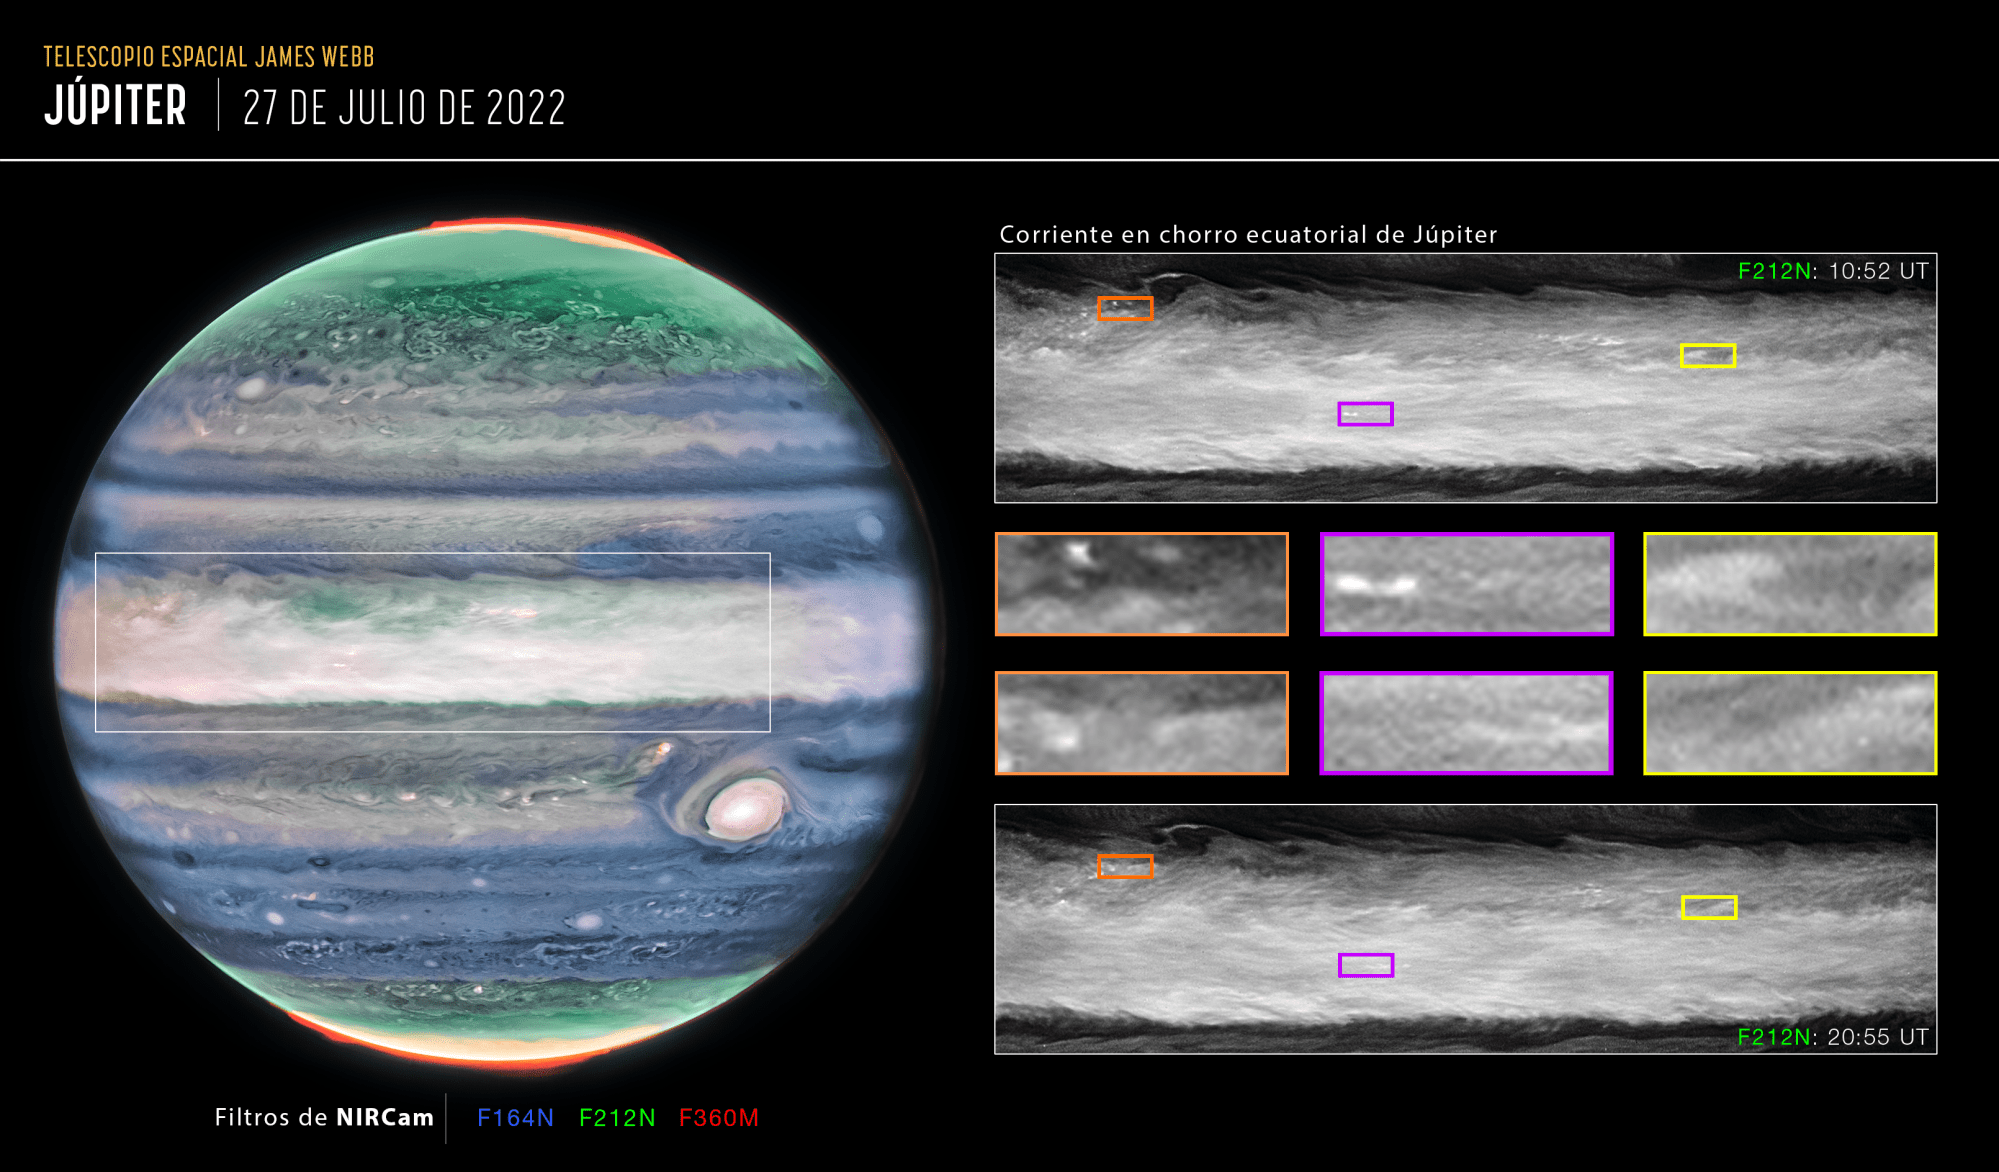 Imagen que muestra en detalle la corriente en chorro ecuatorial de Júpiter.